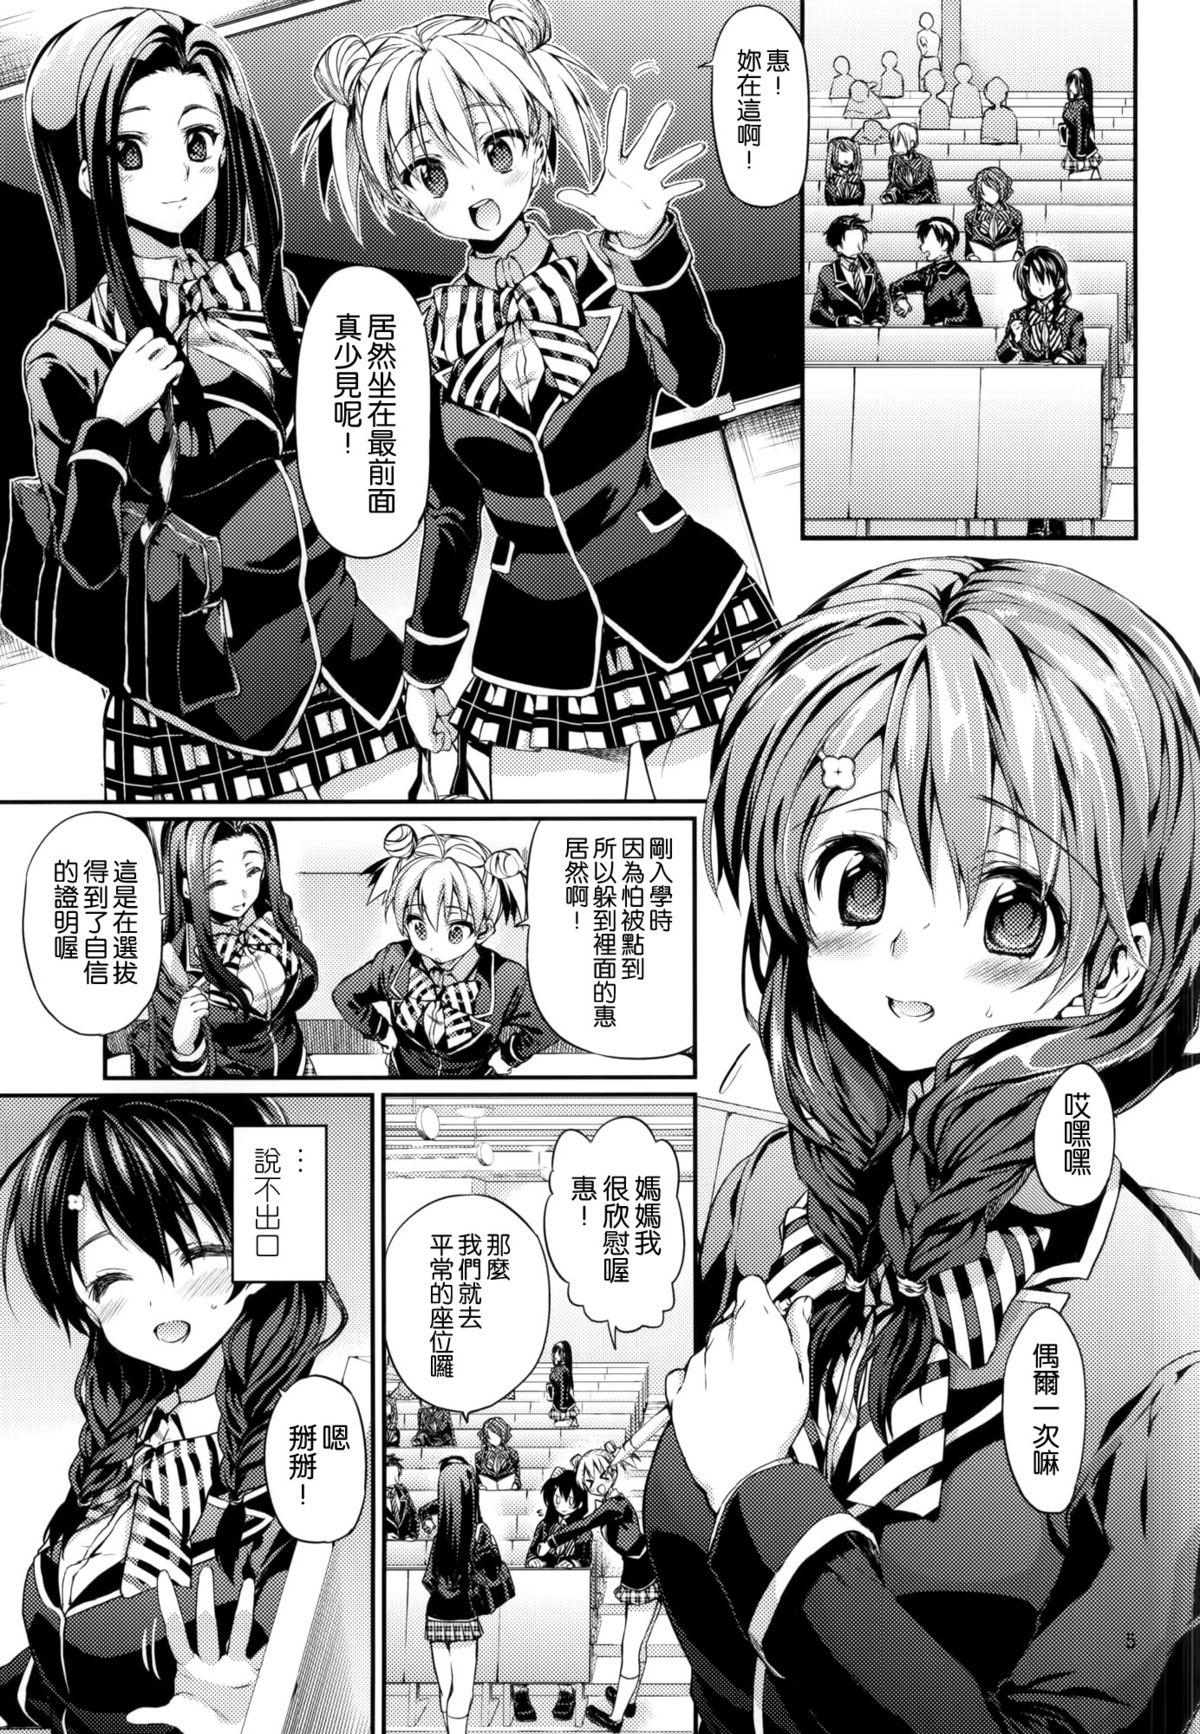 Tits Houkago Hospitality 2 - Shokugeki no soma Teens - Page 3